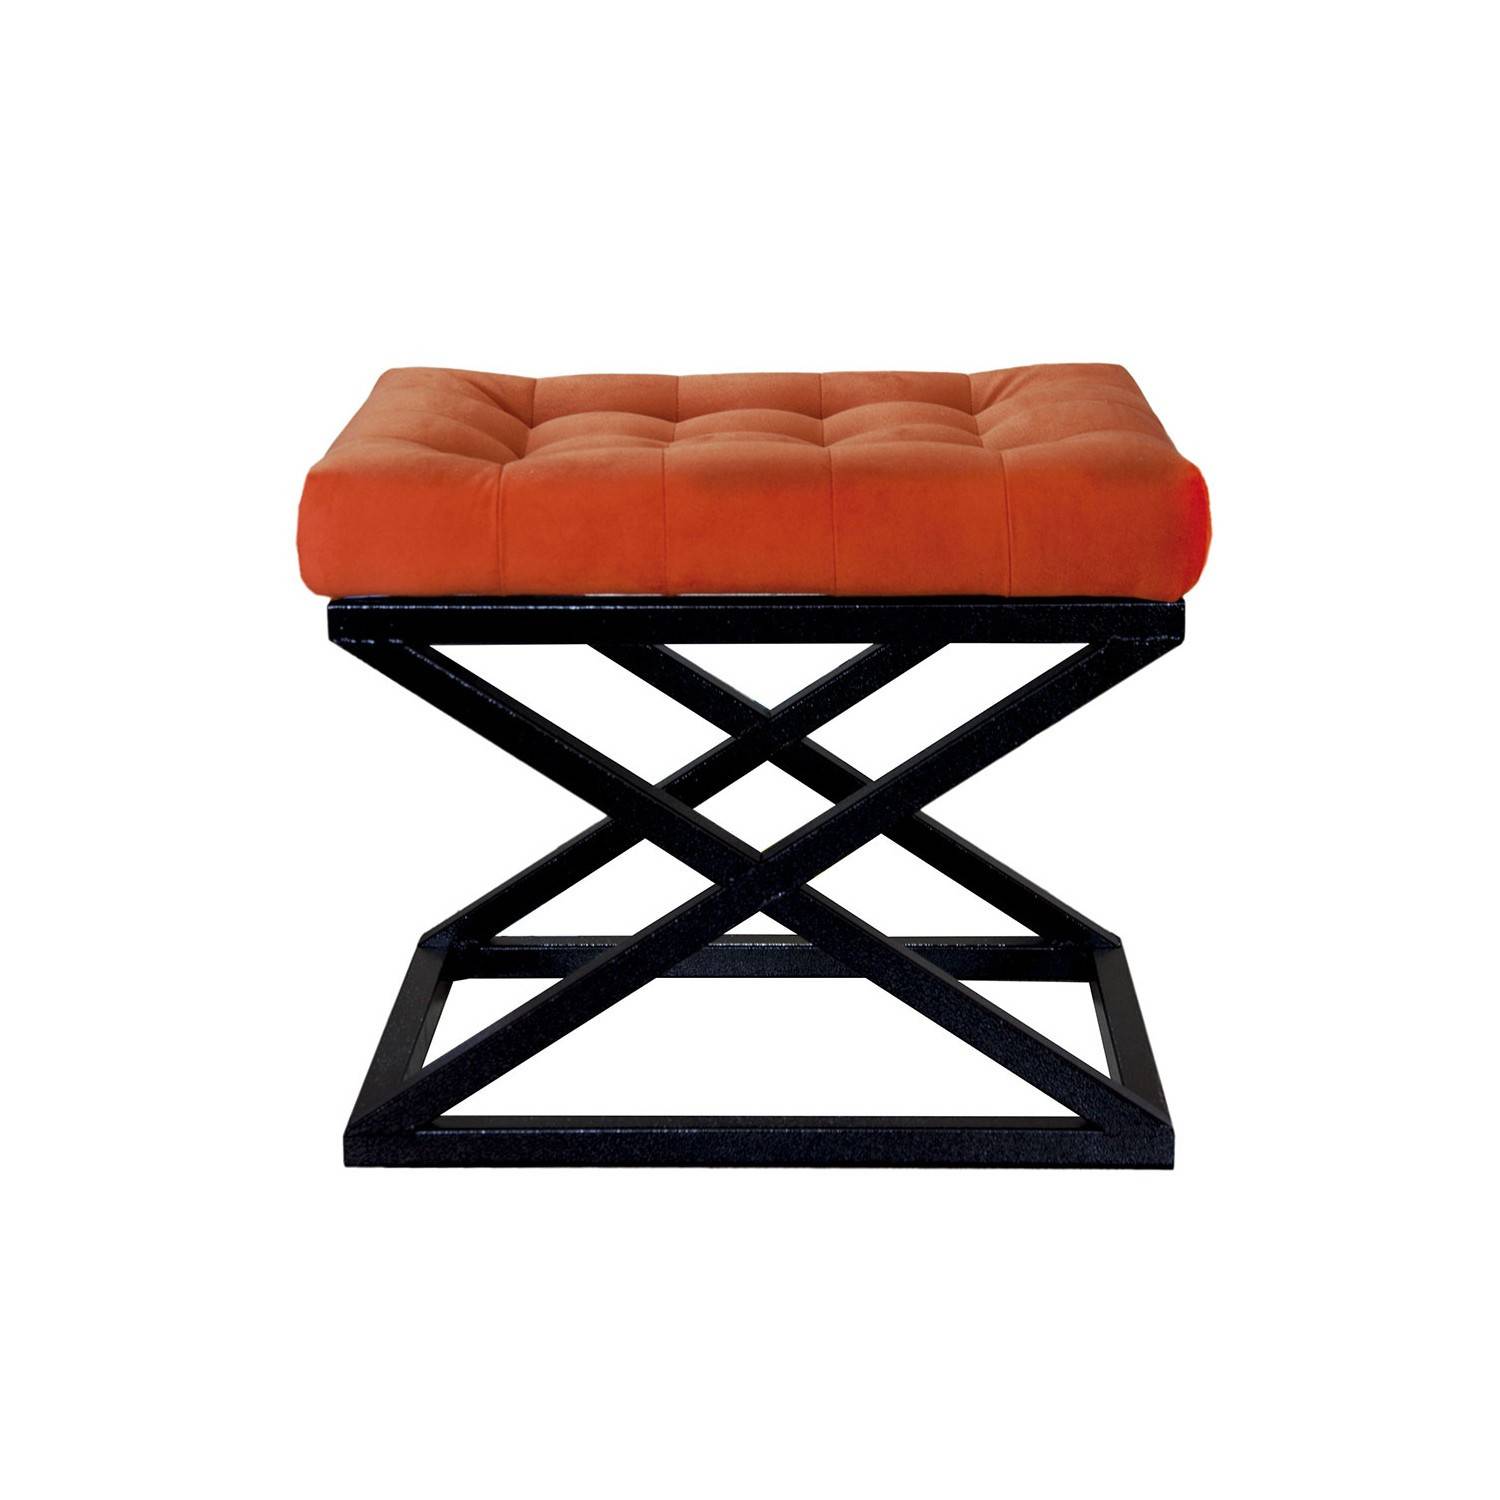 Taburete Ulad de metal negro y terciopelo naranja, asiento tapizado